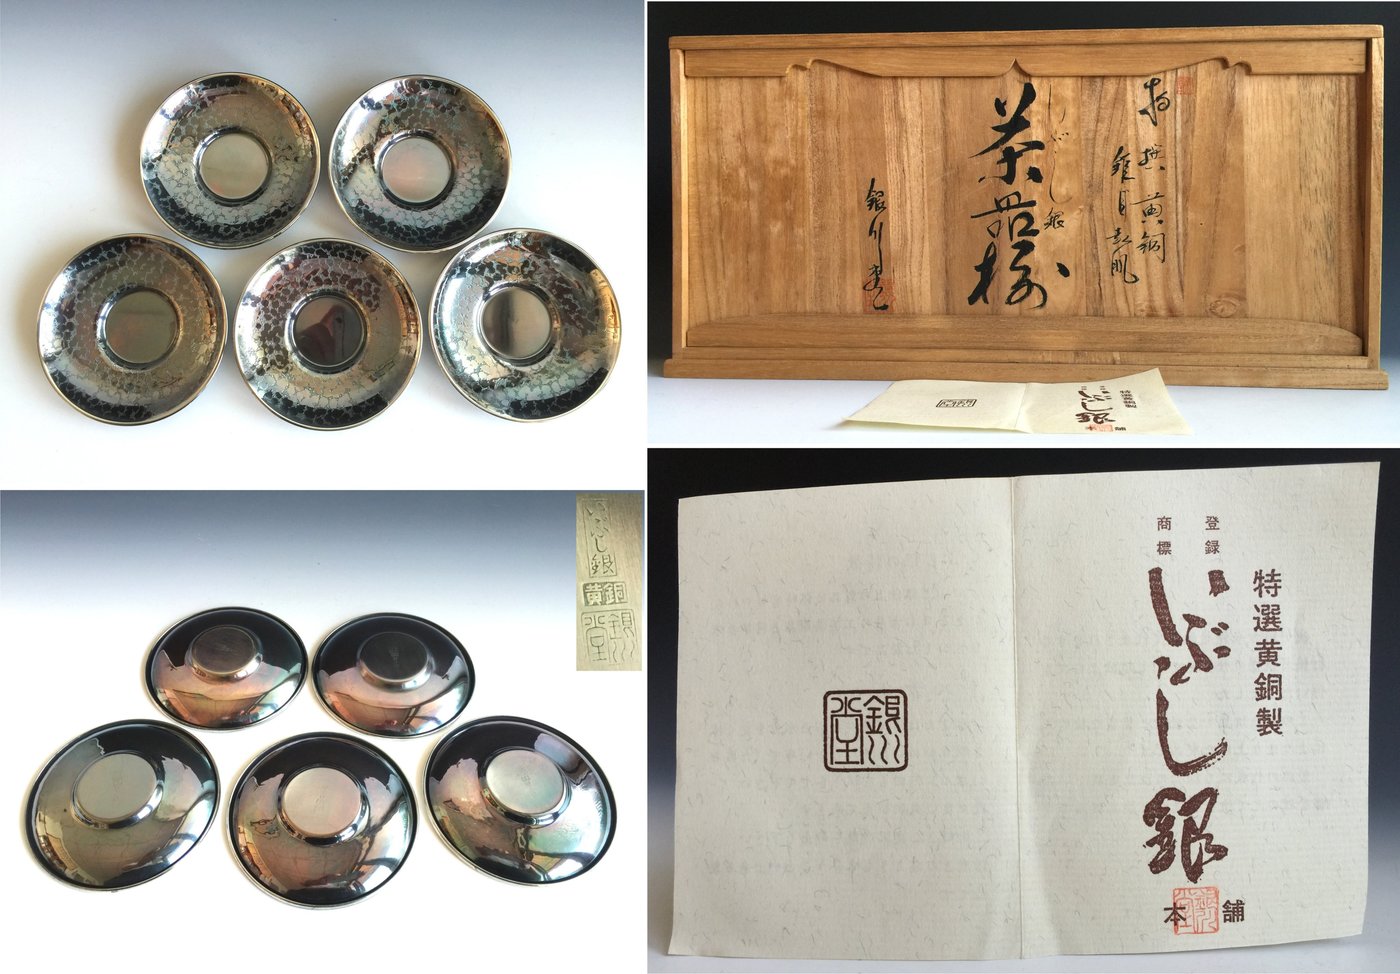 松果坊】日本金工『銀川堂』造燻銀茶具一組共箱未使用品s177b | Yahoo 